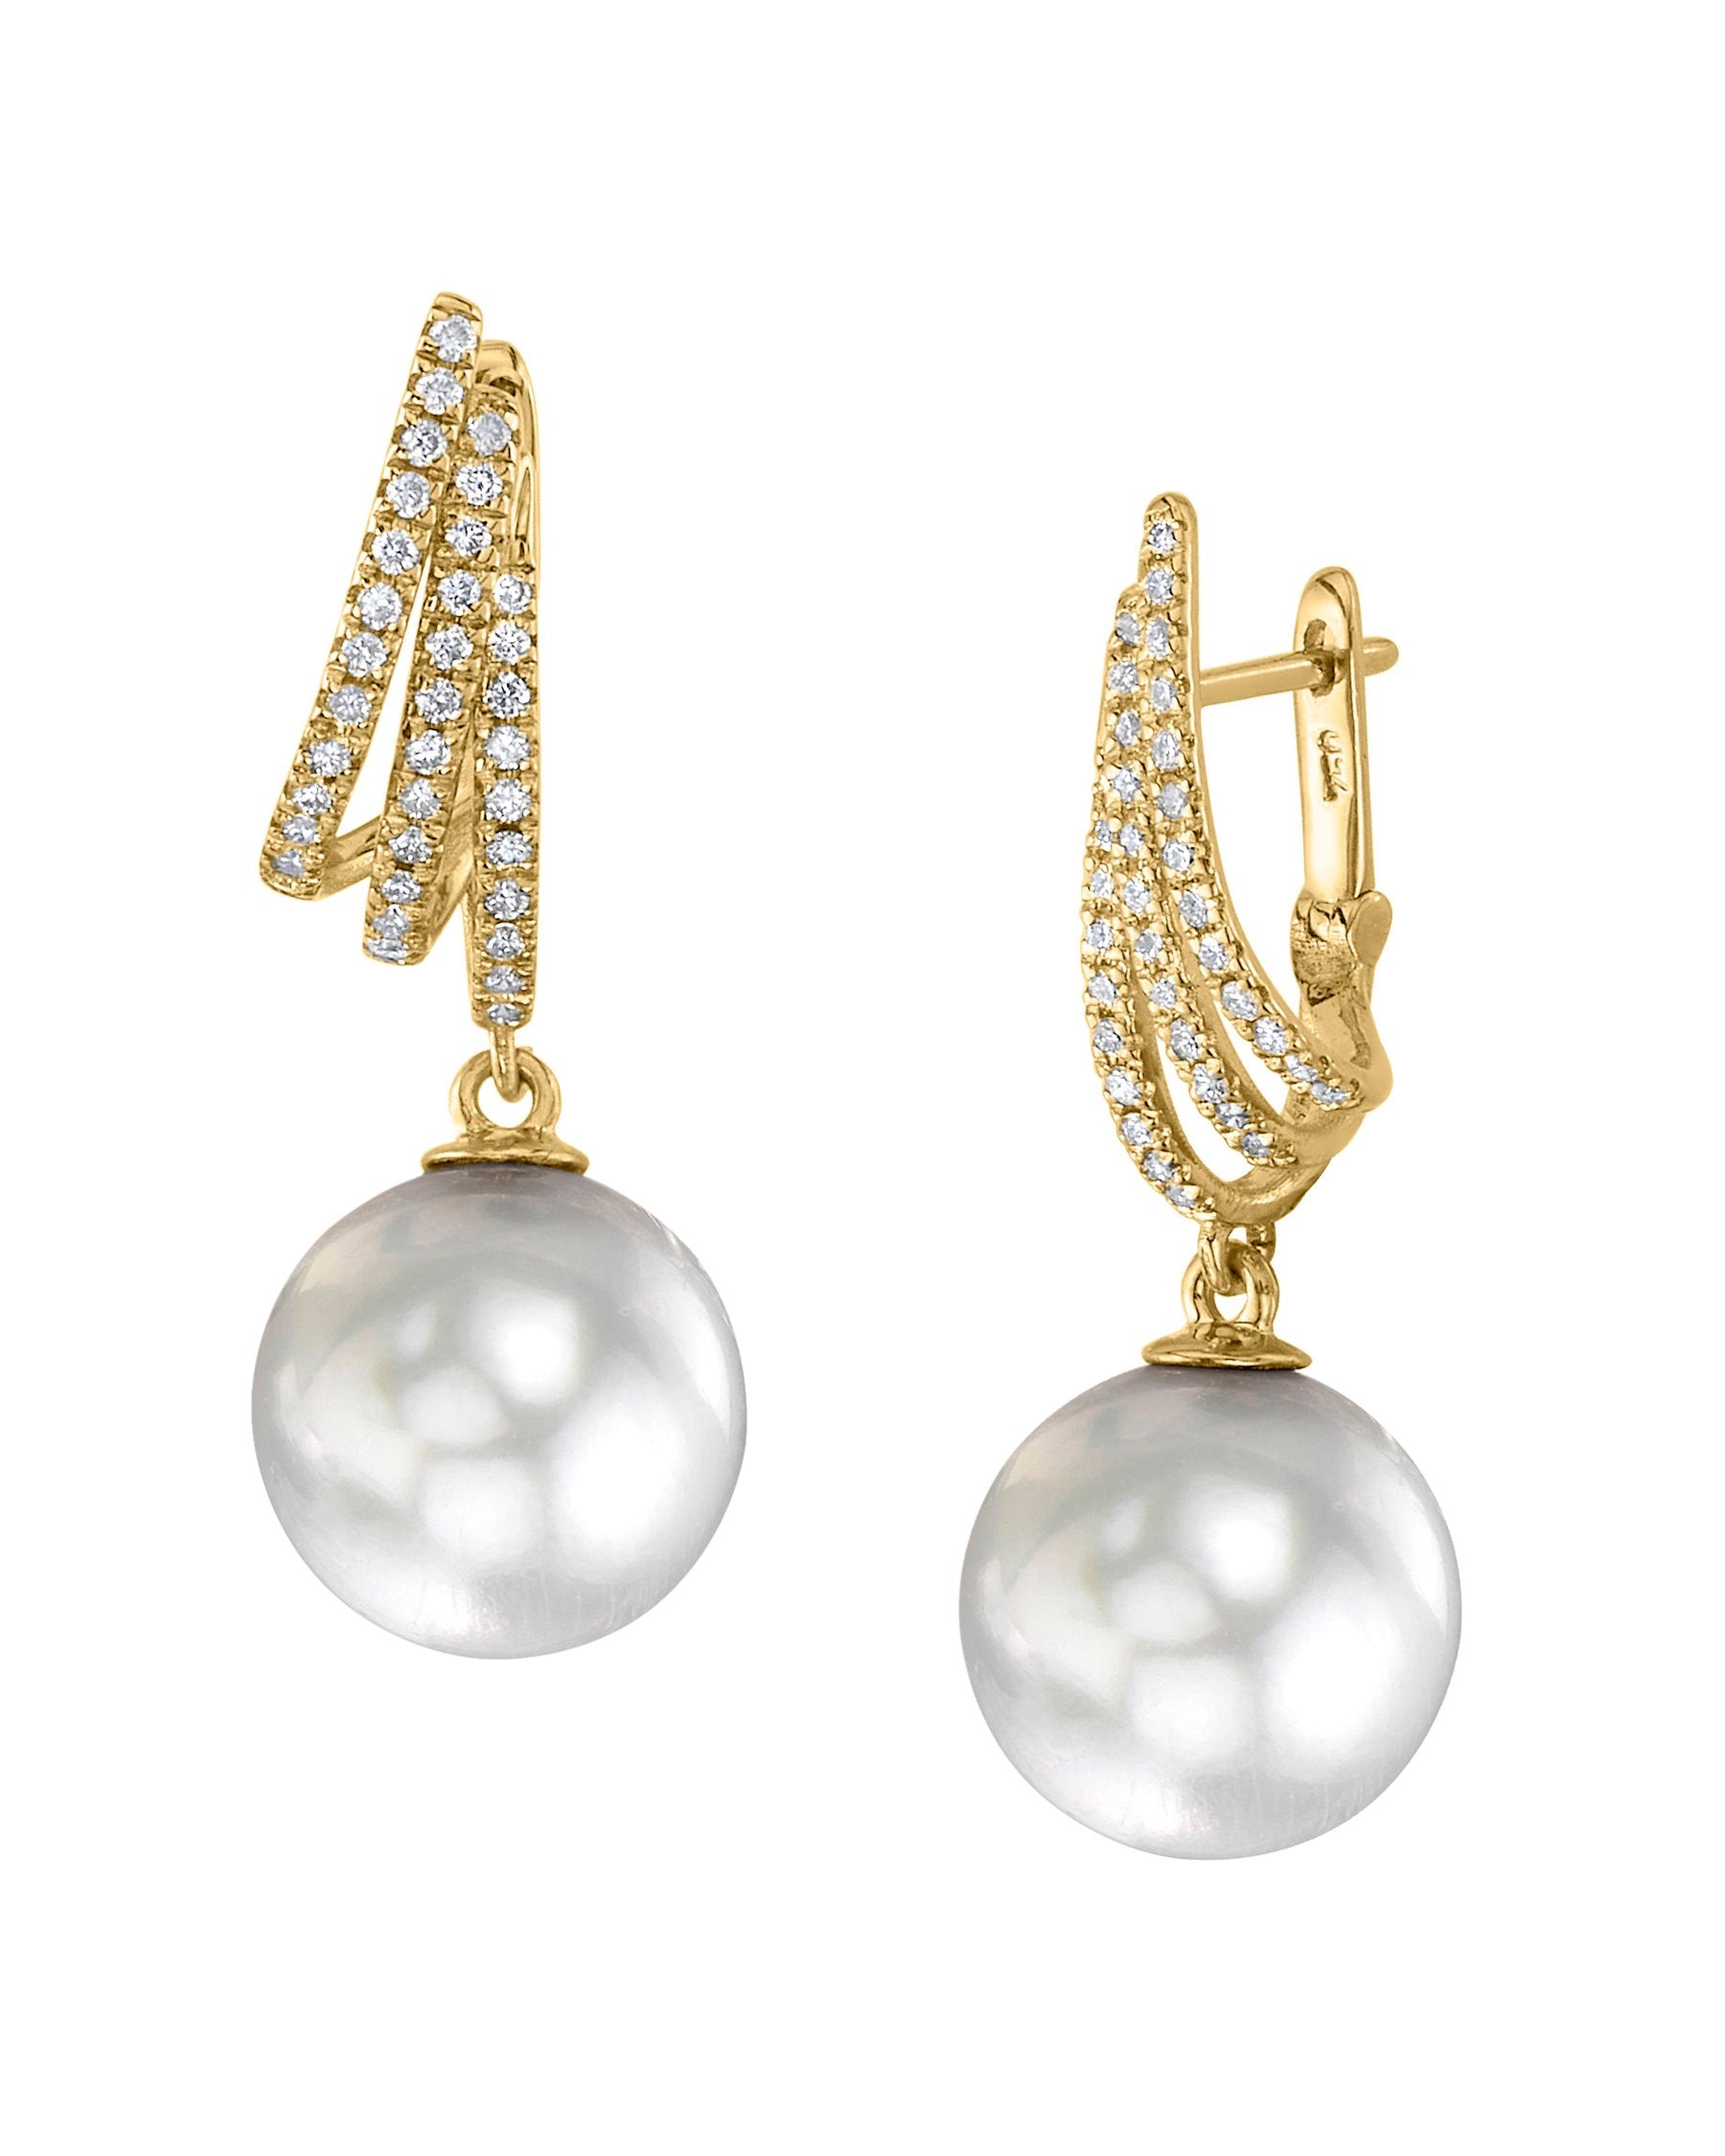 White South Sea Pearl & Diamond Liv Earrings - Model Image